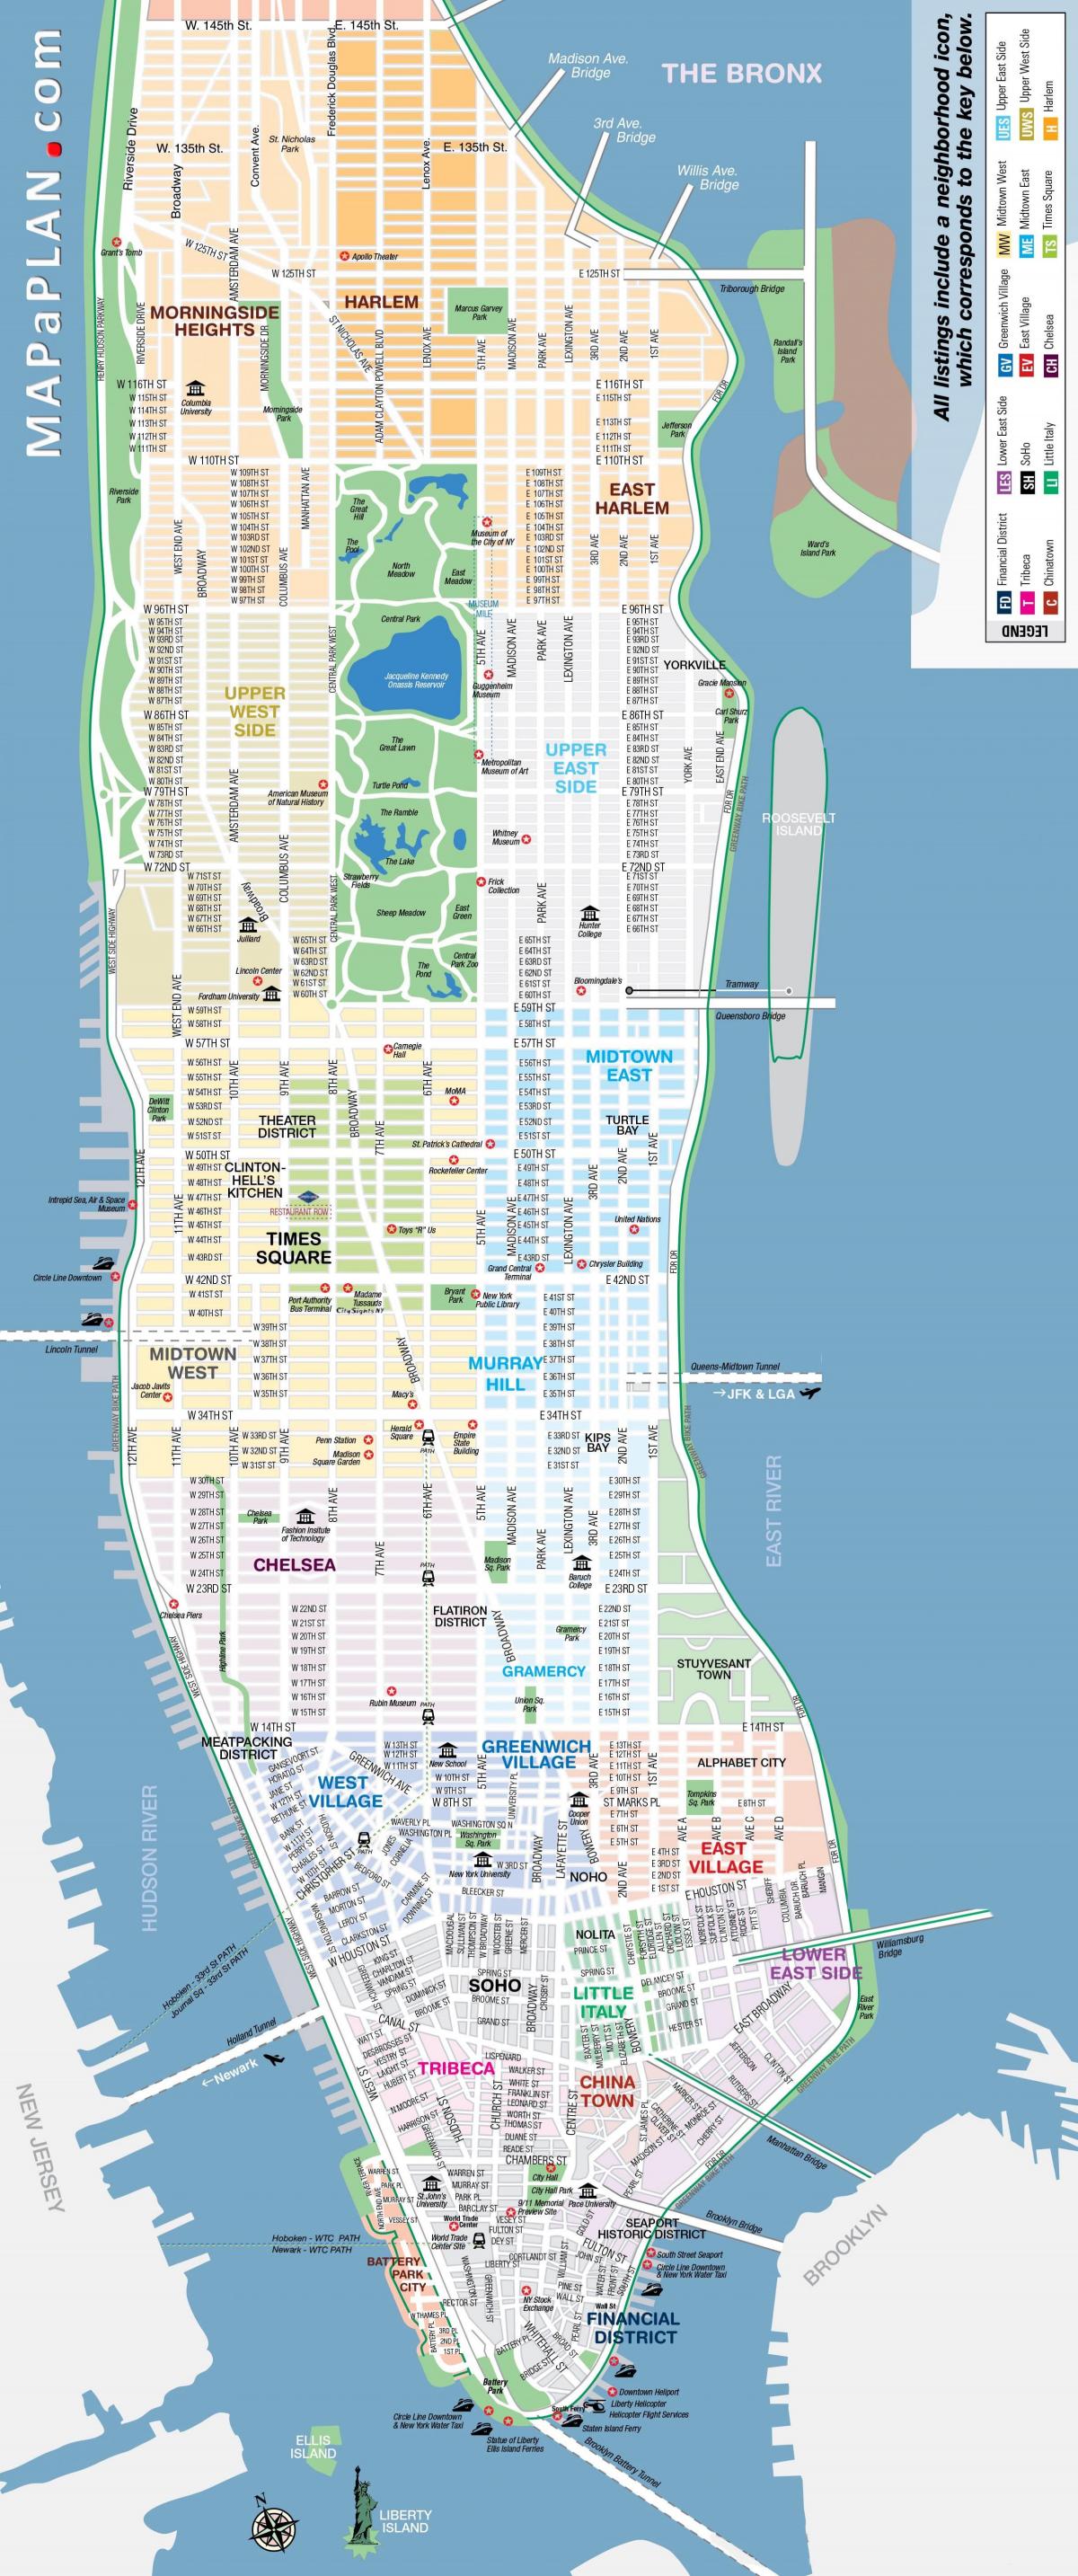 Mappa delle strade di Manhattan